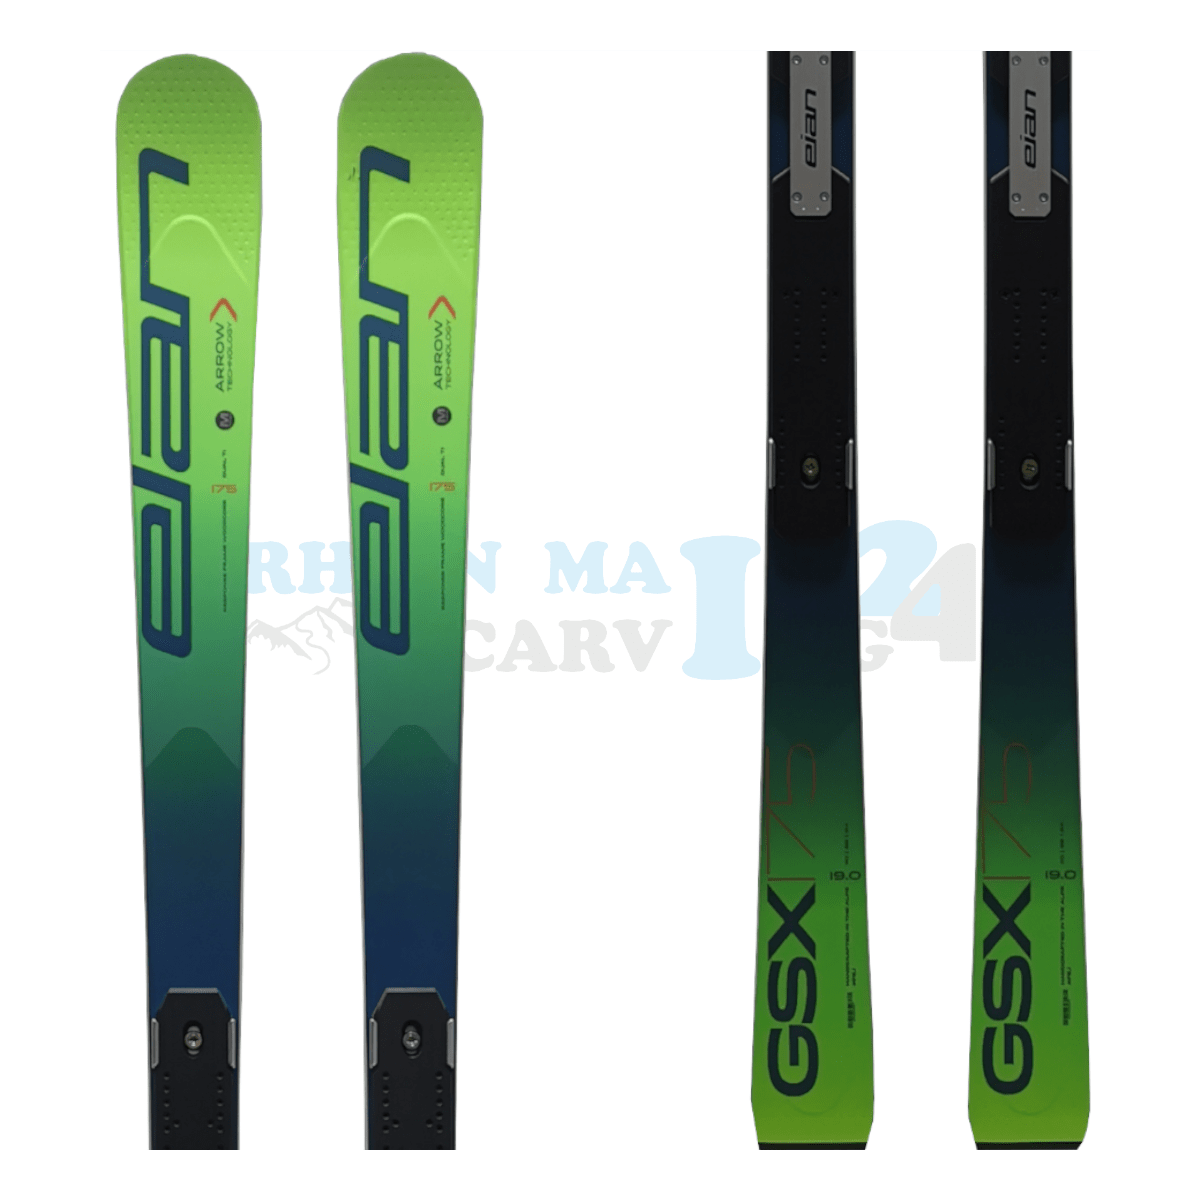 Elan GSX Master mit der Rennplatte, der Ski ist aus dem Jahr 2020, die Farbe ist grün, die Ansicht des oberen sowie unteren Teils des Skis